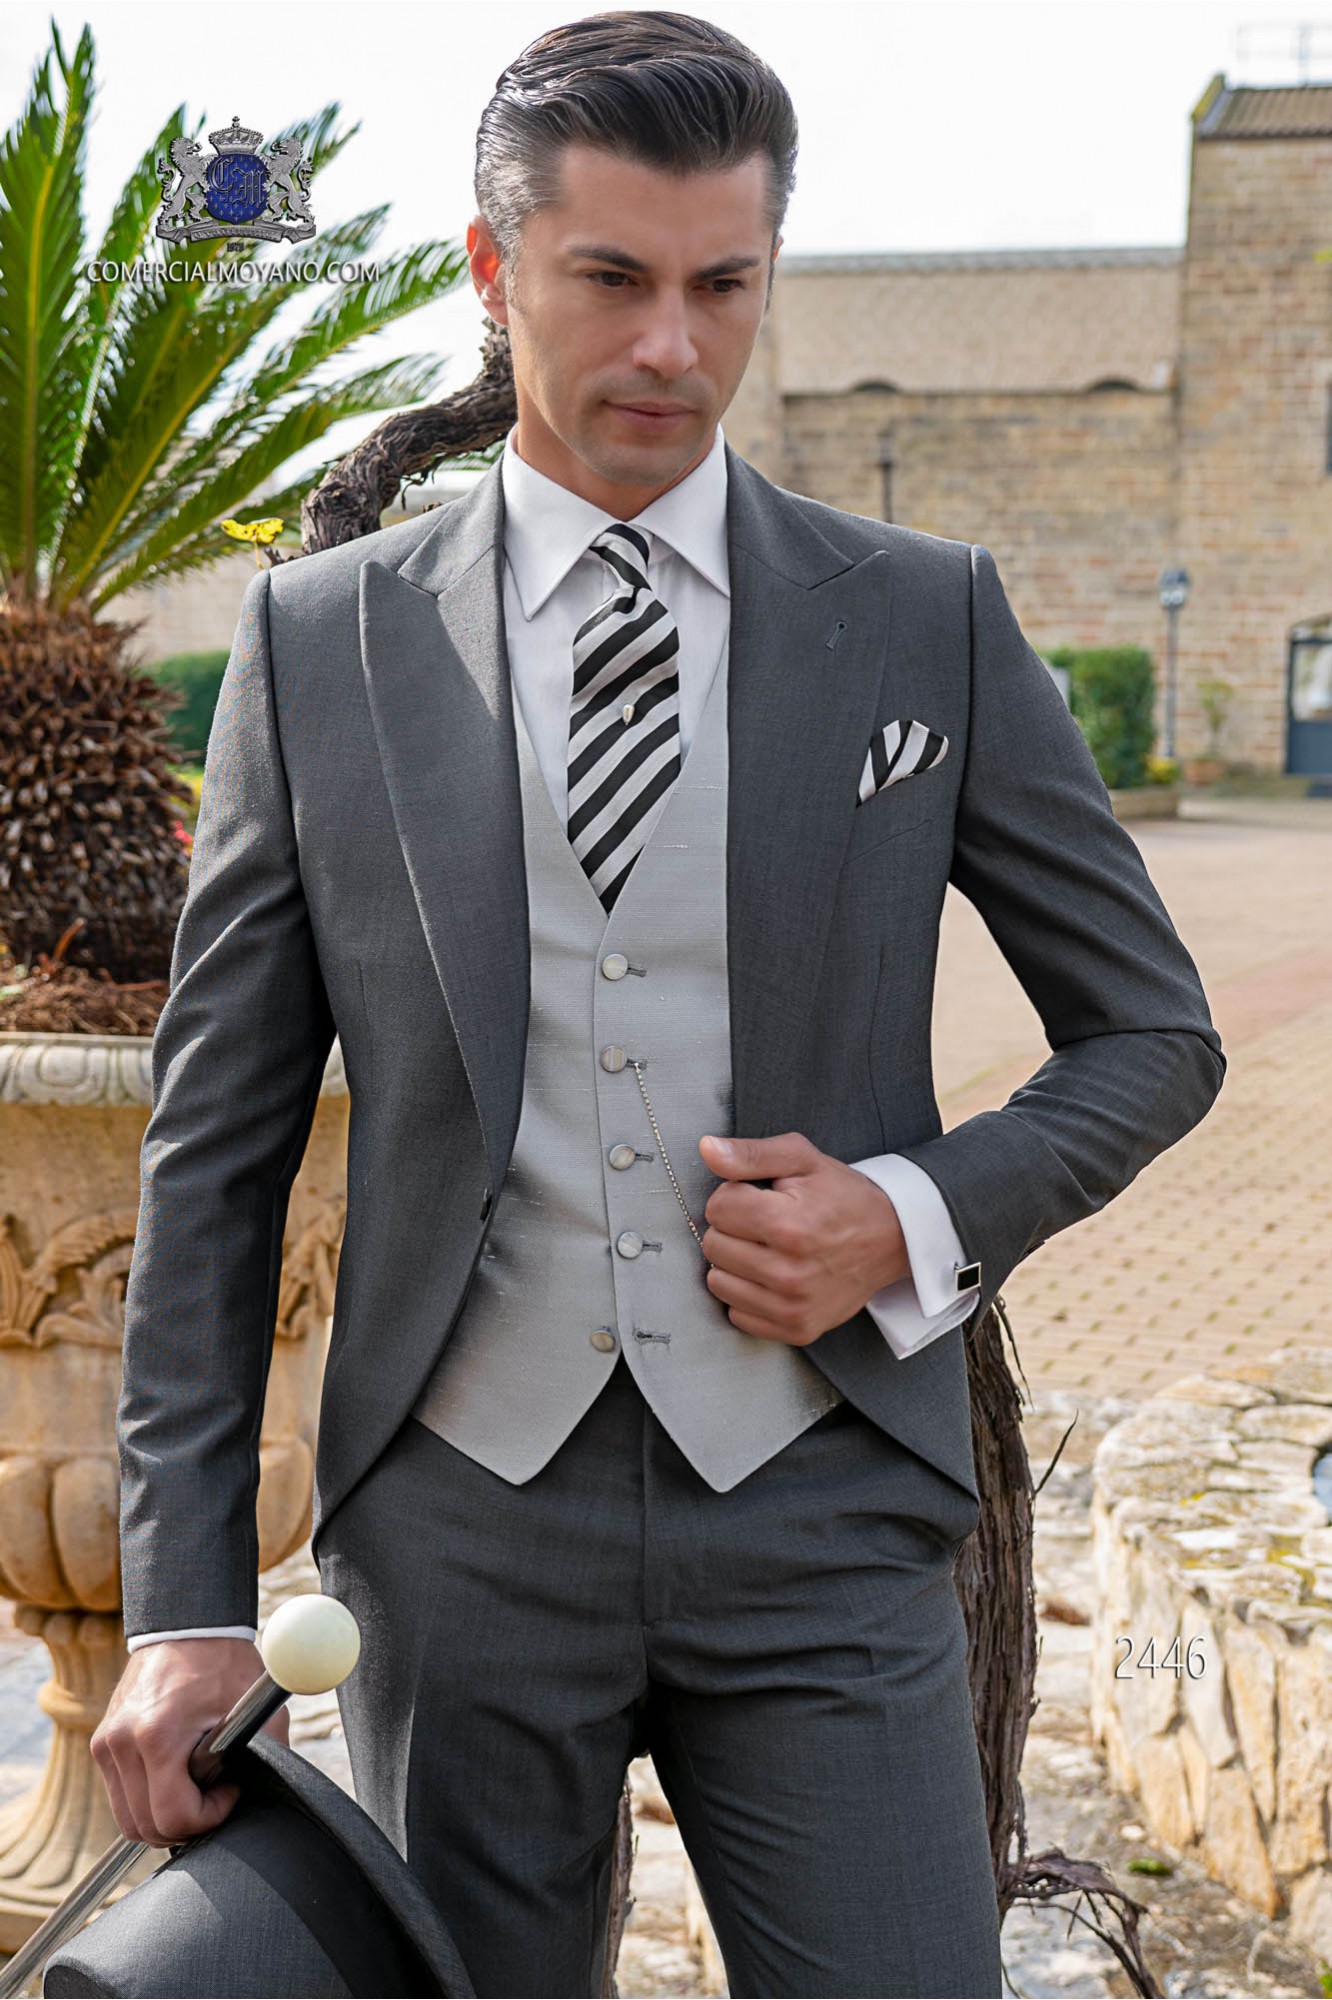 Chaqué italiano de elegante corte “Slim”. Tejido lana de alpaca gris marengo modelo: 2446 Mario Moyano colección Gentleman